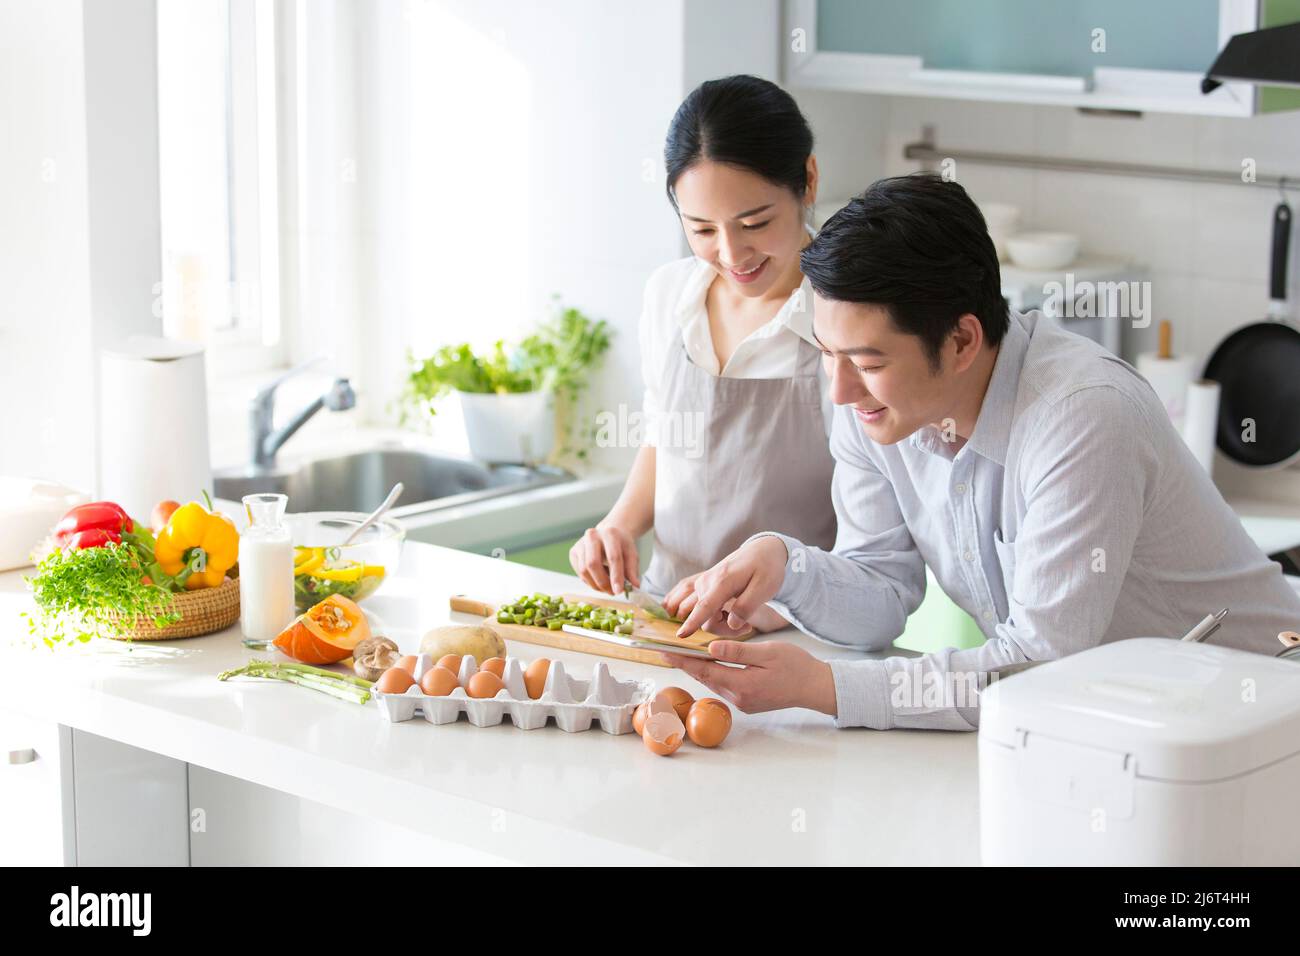 En la cocina familiar, una pareja joven disfruta cocinando juntos. Utilizan tabletas para consultar los tutoriales de cocina - foto de stock Foto de stock